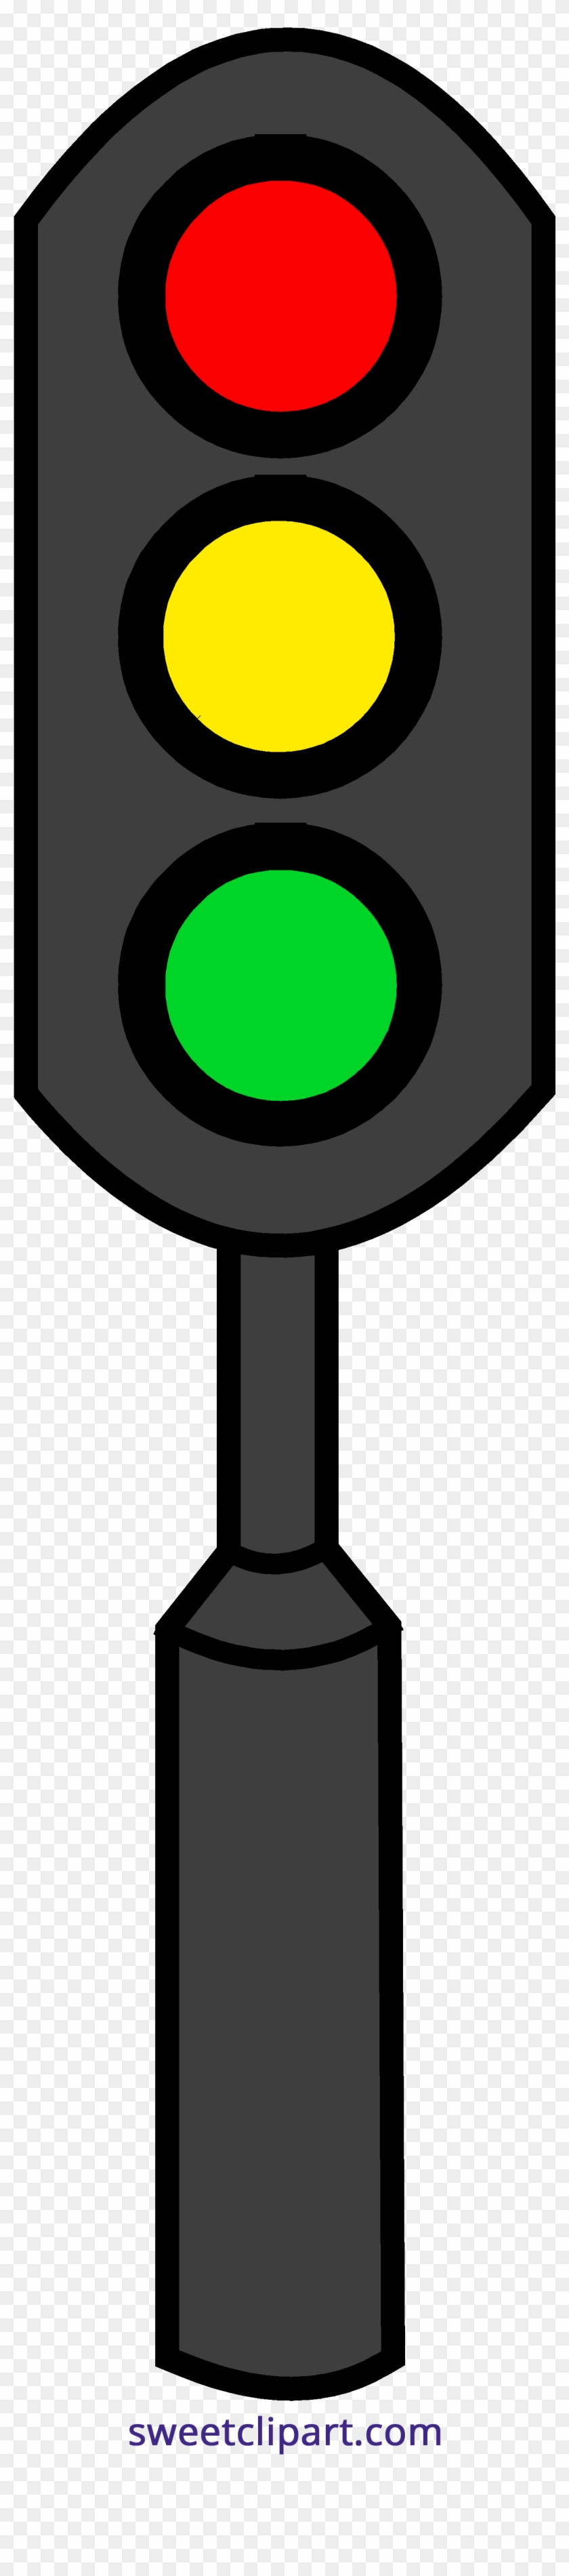 Green Traffic Light Clipart Traffic Light Clipart - Traffic Light Clip Art Png #376577